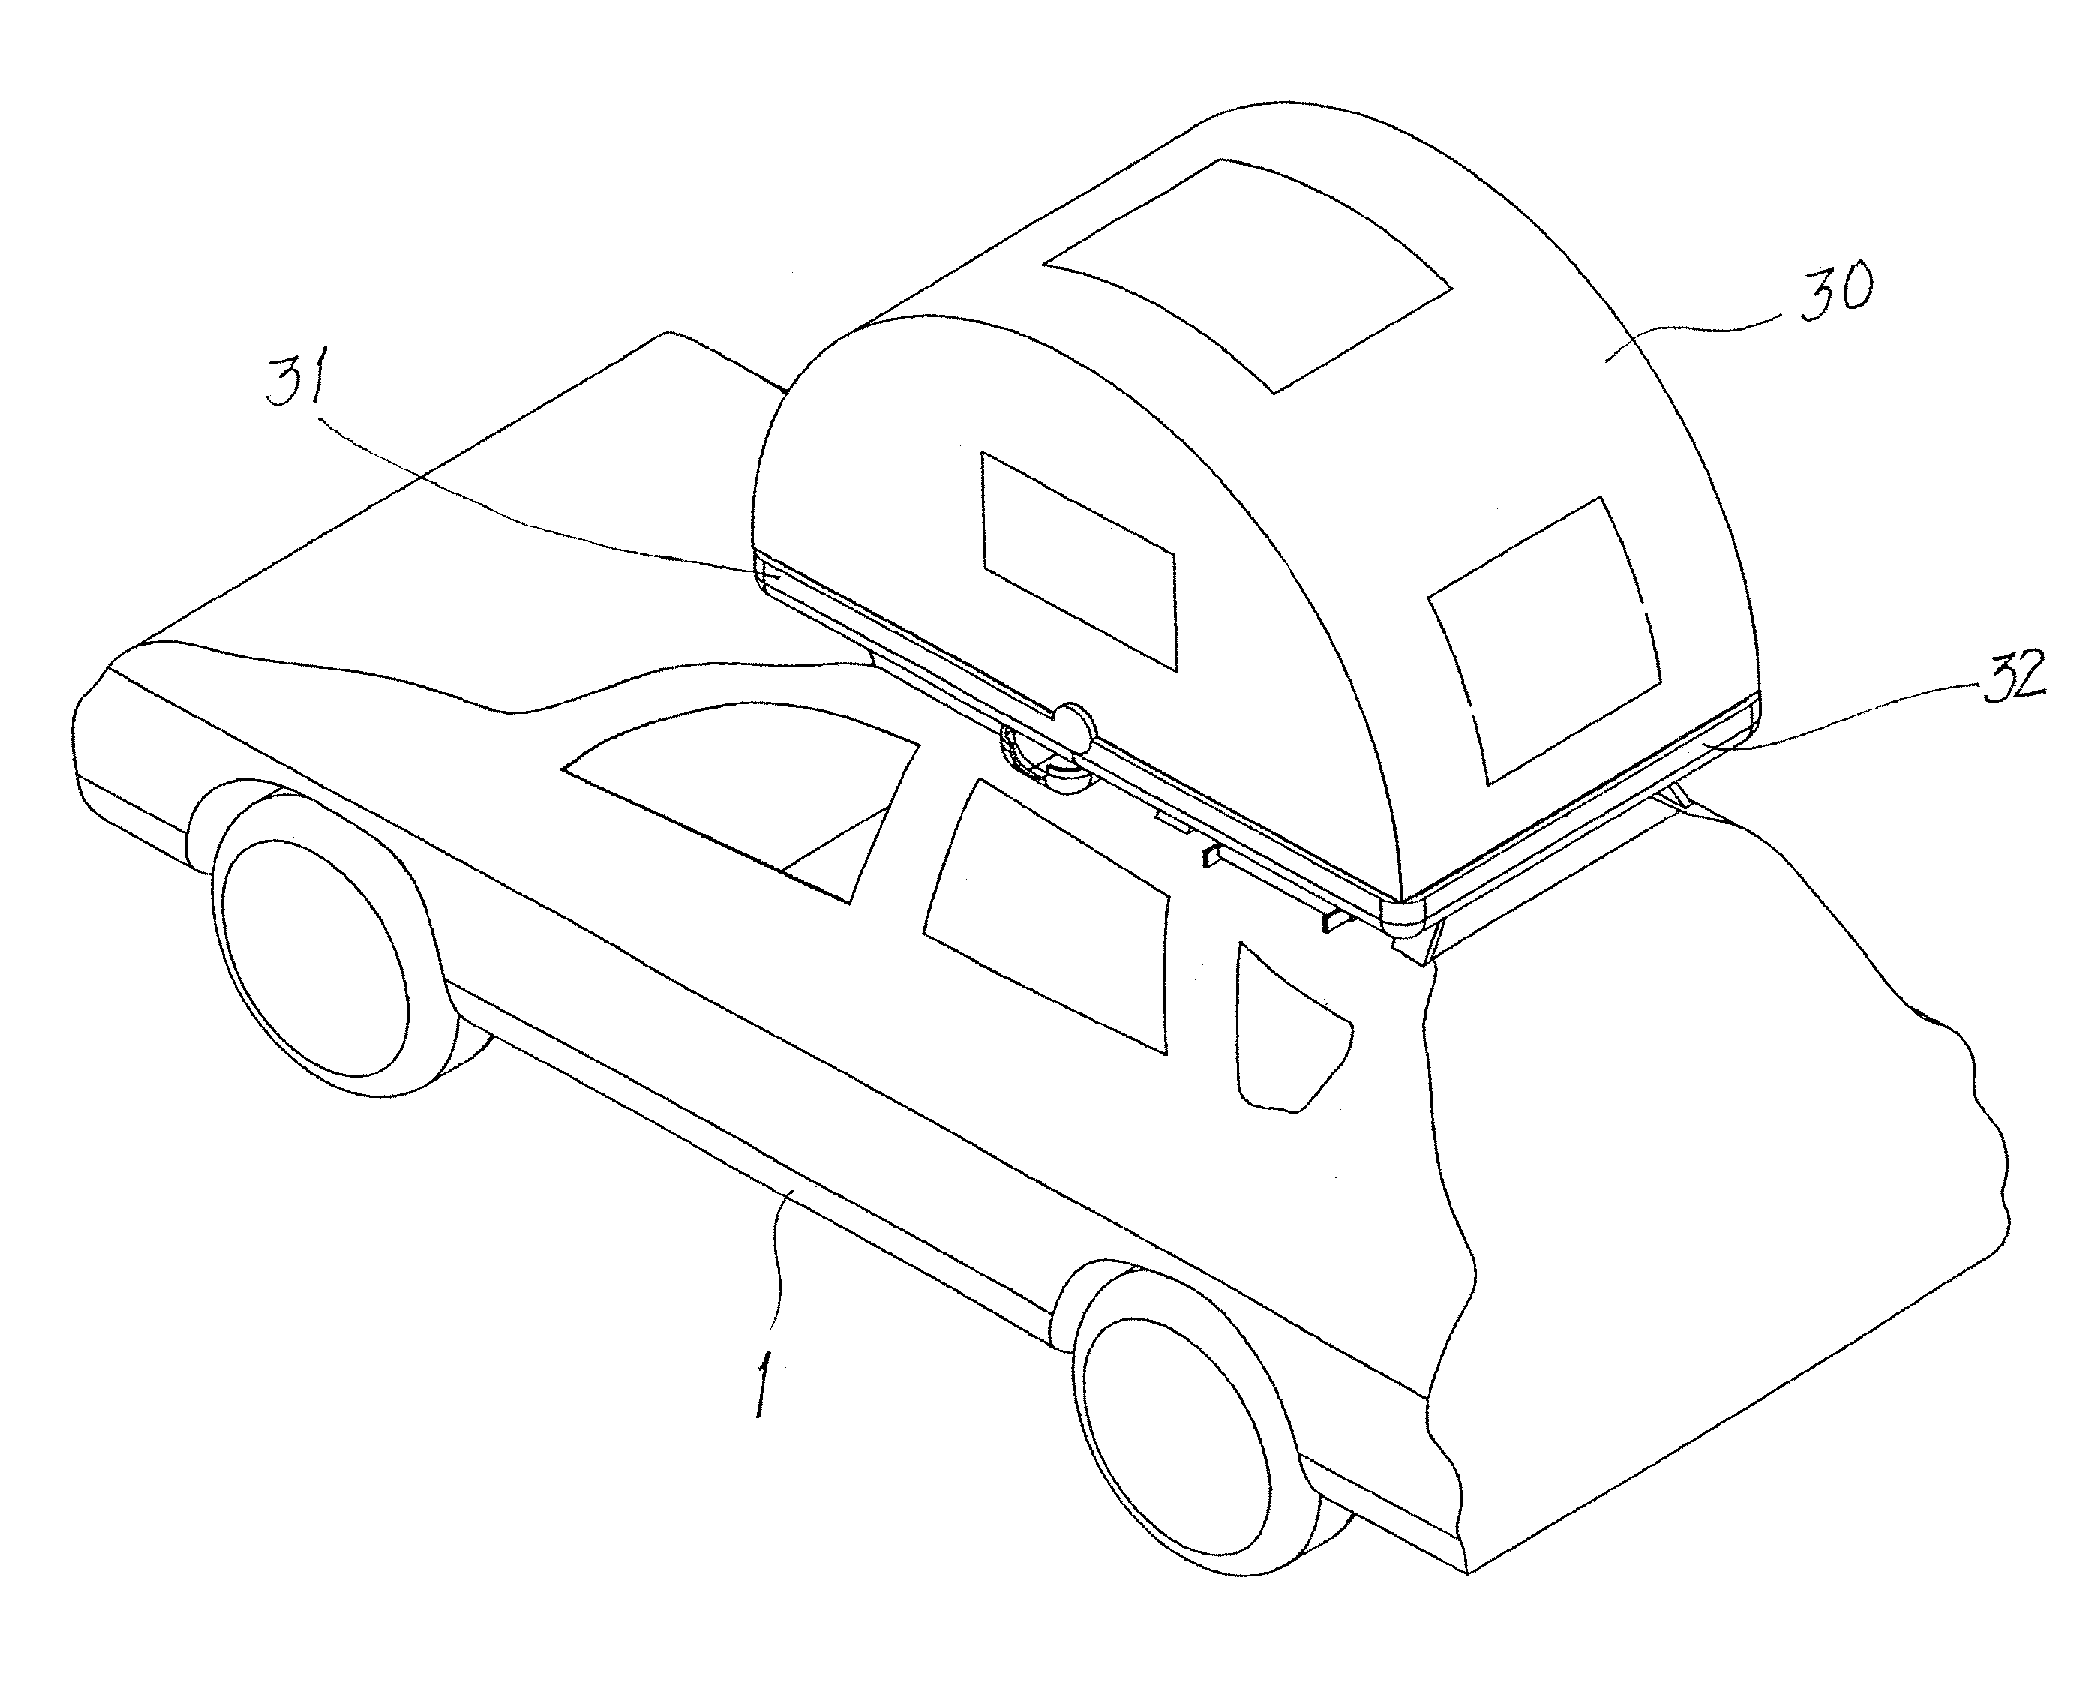 Car-top tent